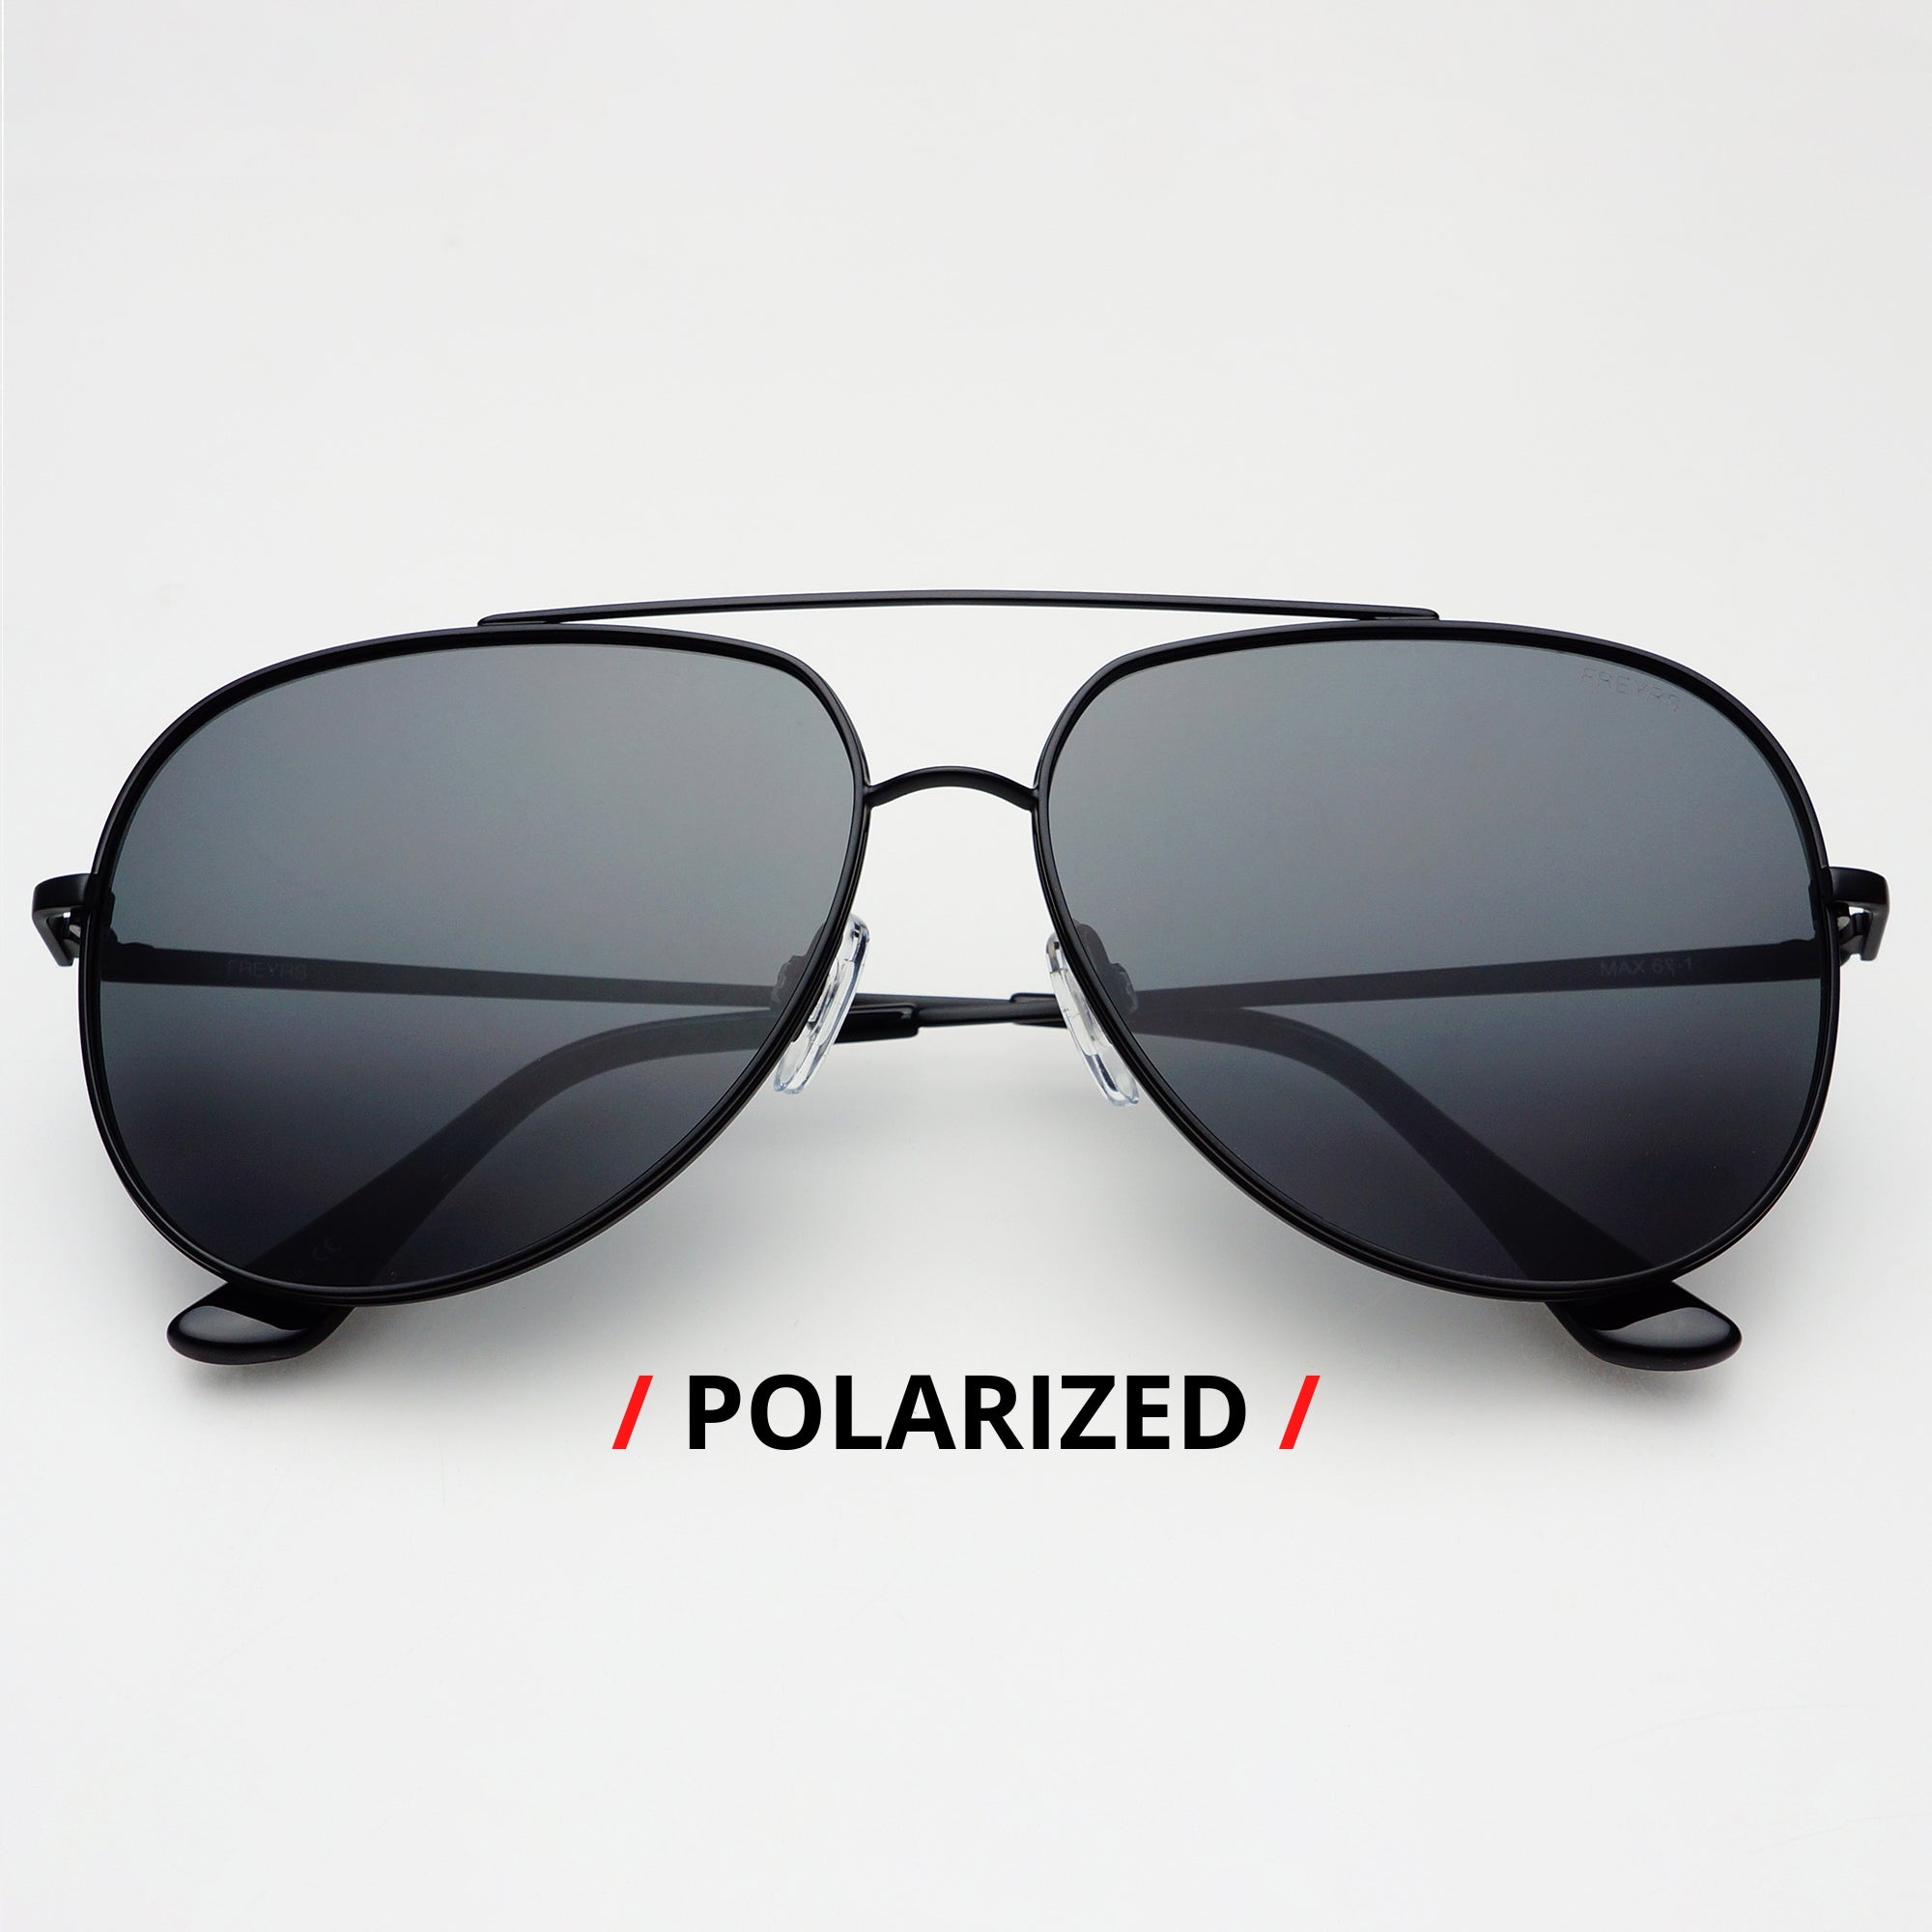 100% Polycarbonate Sunglasses For Men & Women